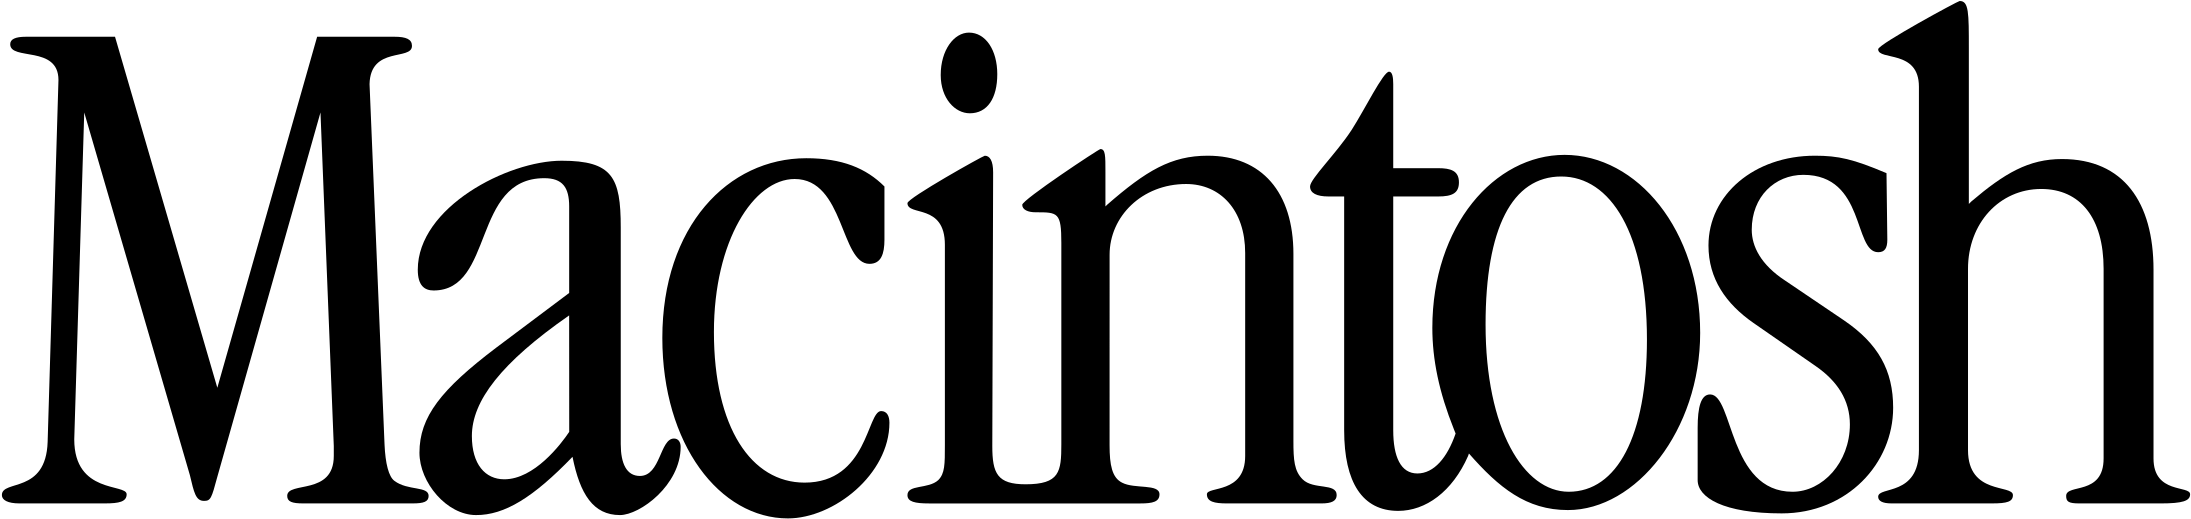 Macintosh Logo Png Transparent - Macintosh Logo (2400x2400), Png Download